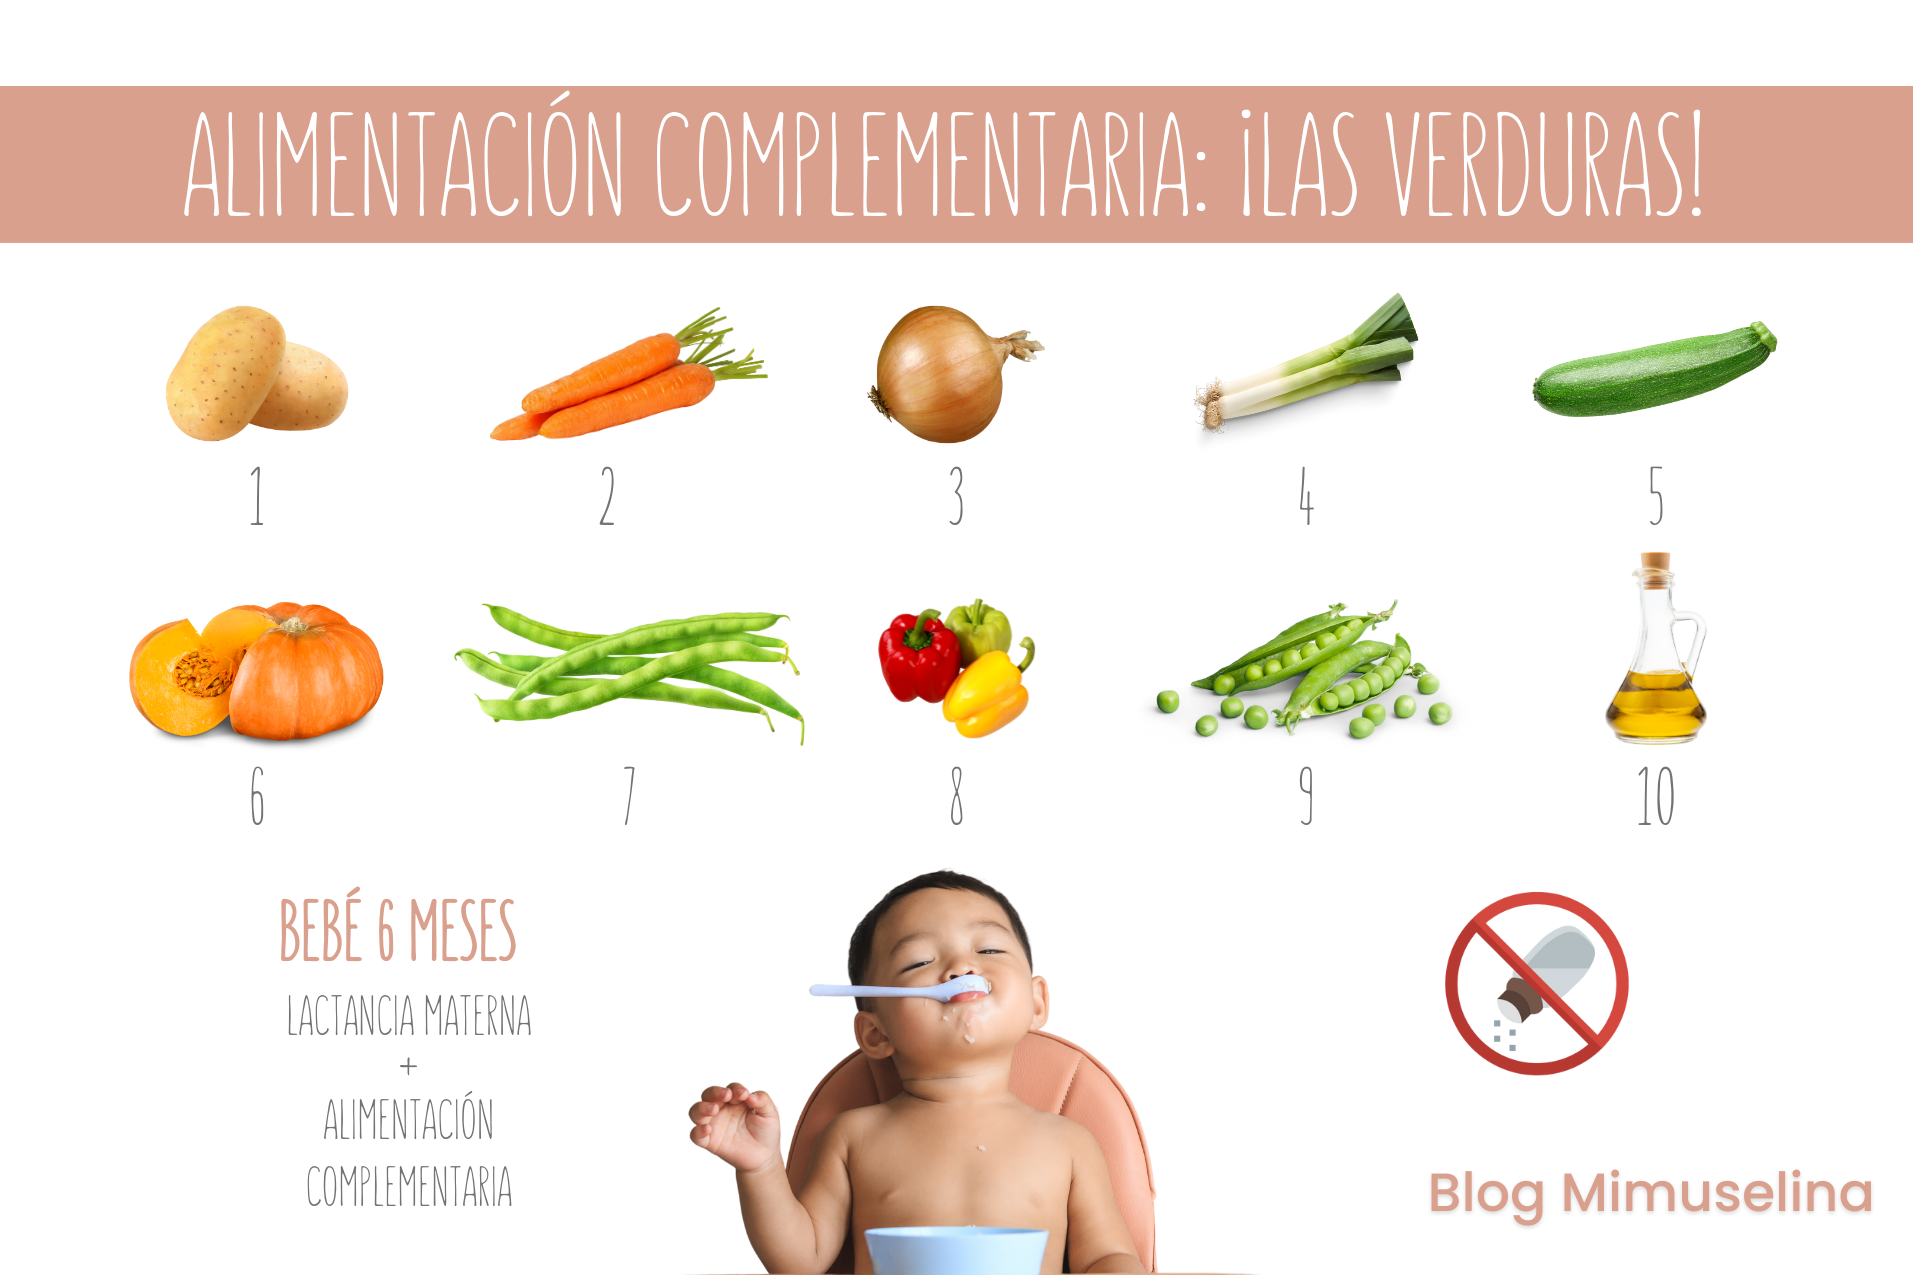 Alimentación complementaria del bebé: INTRODUCCIÓN DE LA VERDURA